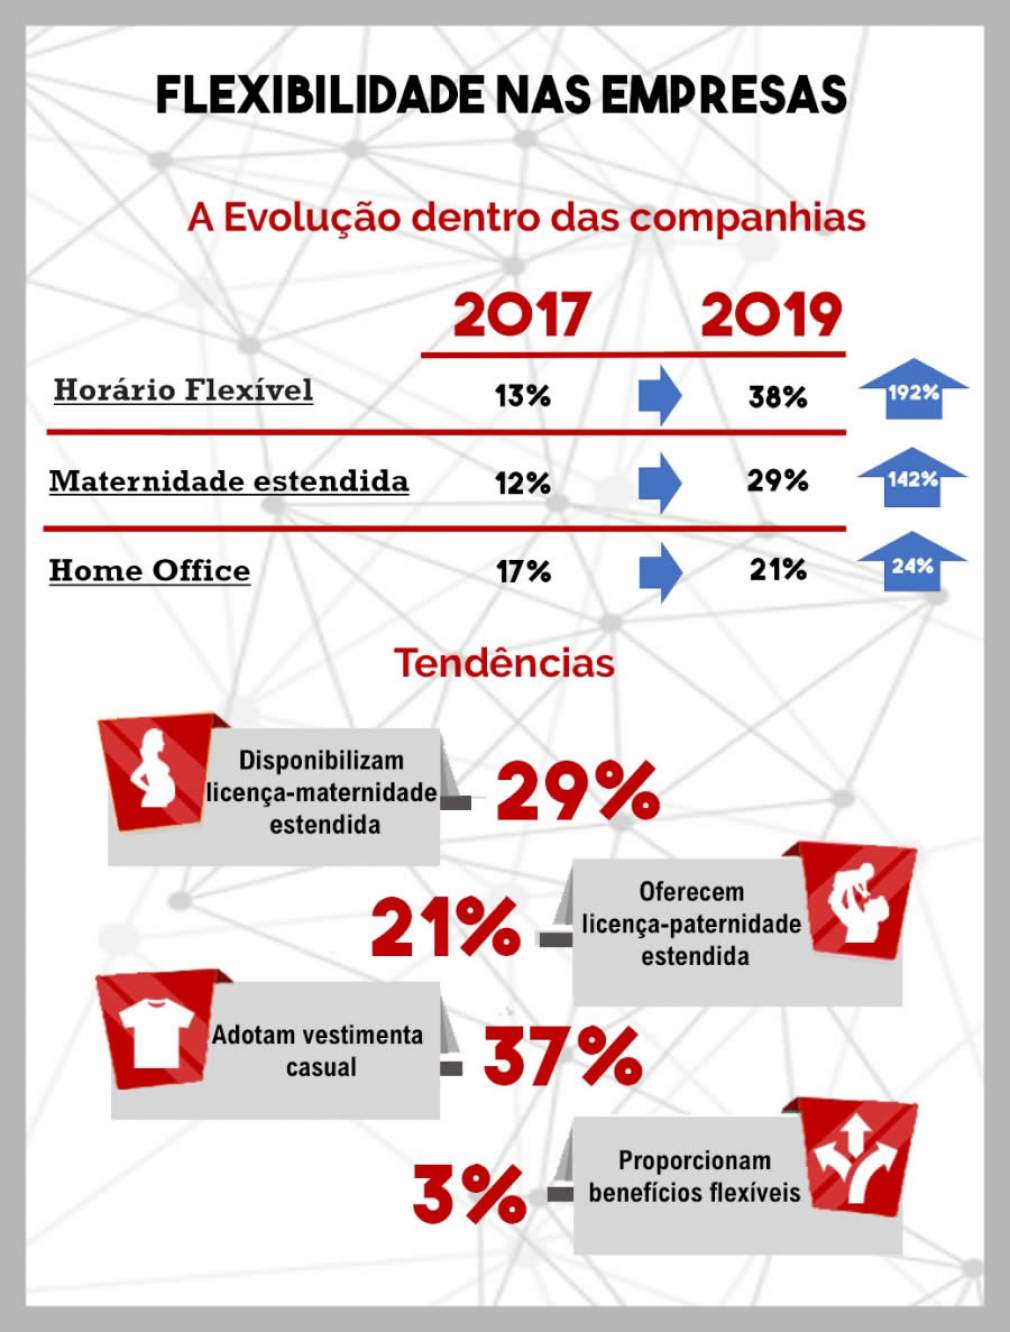 Horário flexível cresce 192% nas empresas do Brasil, revela estudo